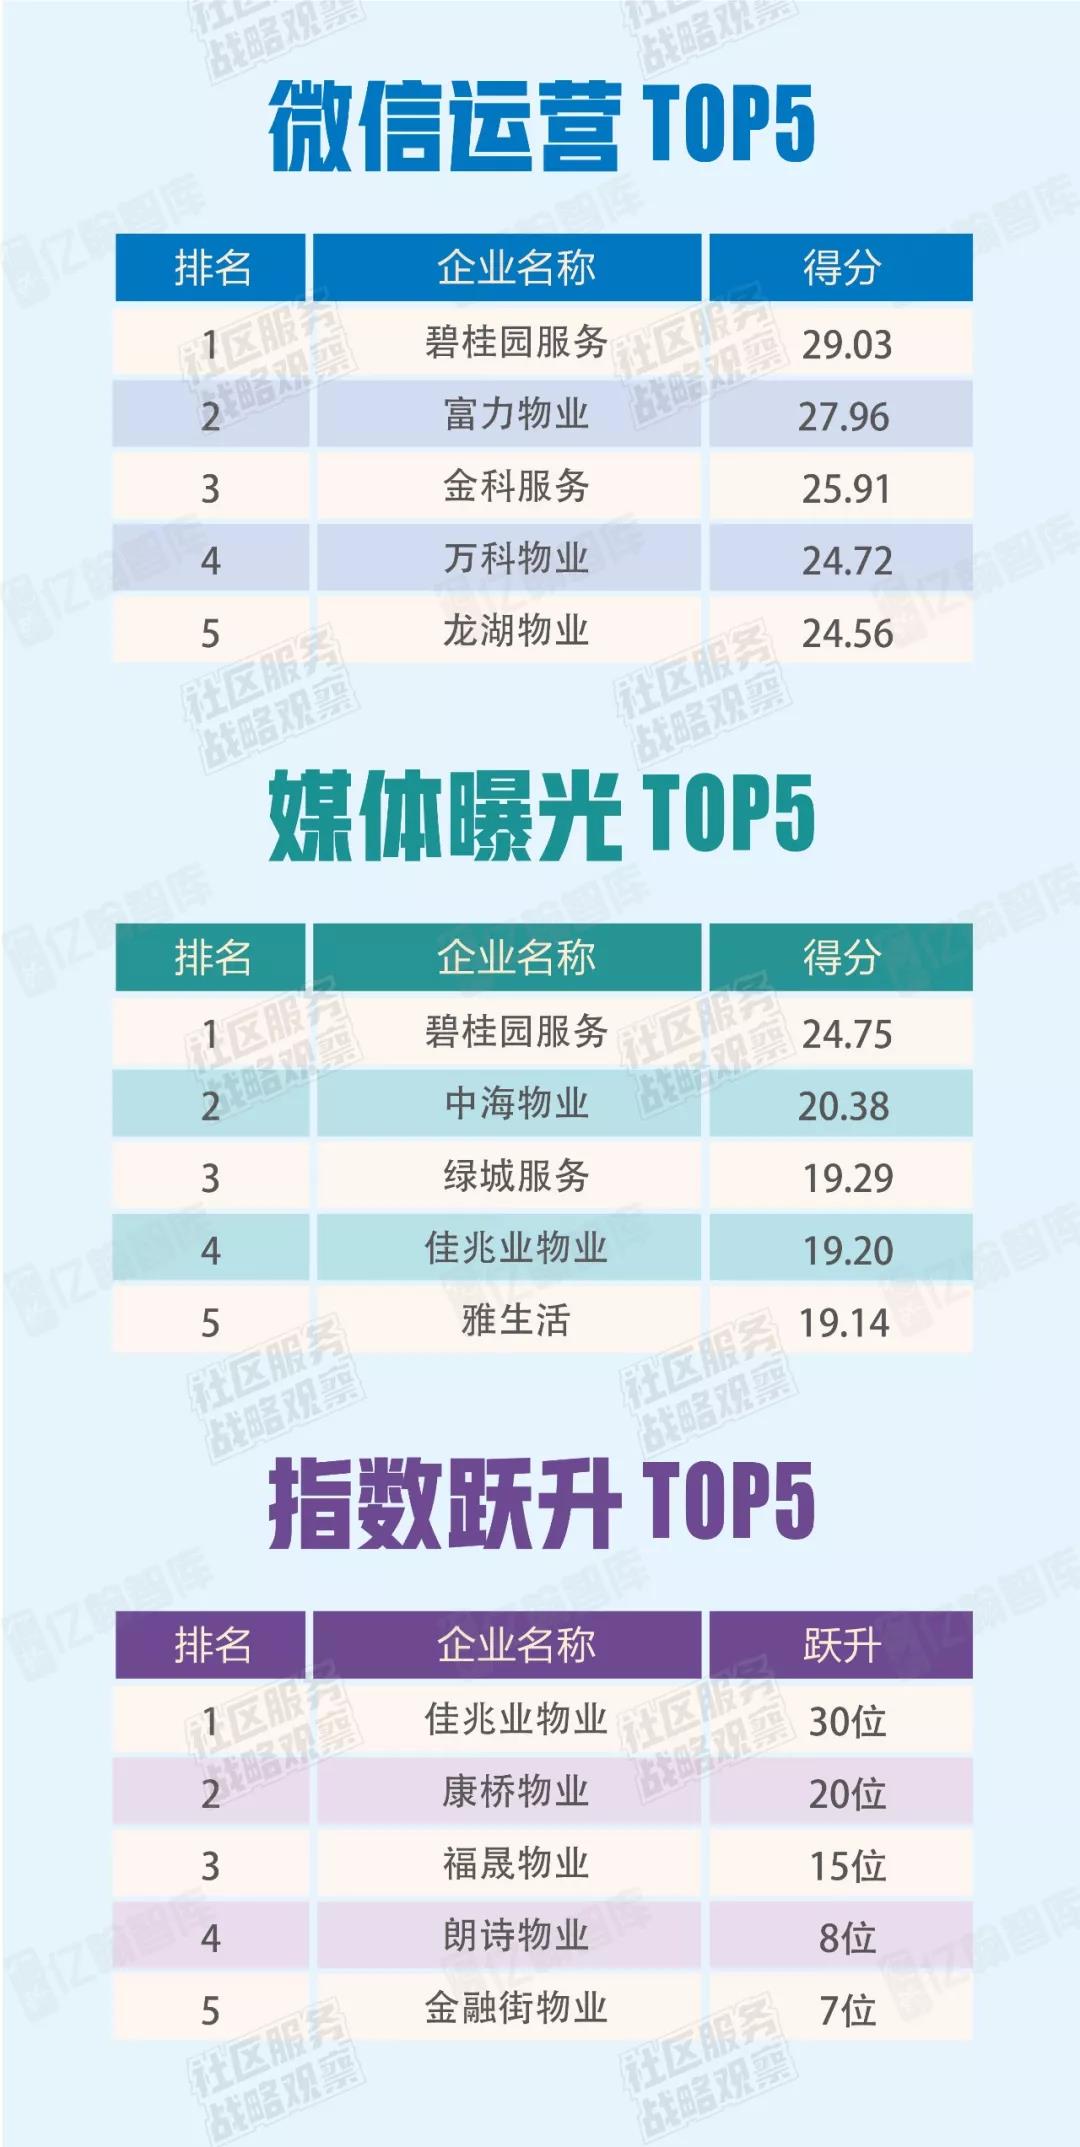 《2018中国社区服务商TOP100》研究启动-中国网地产